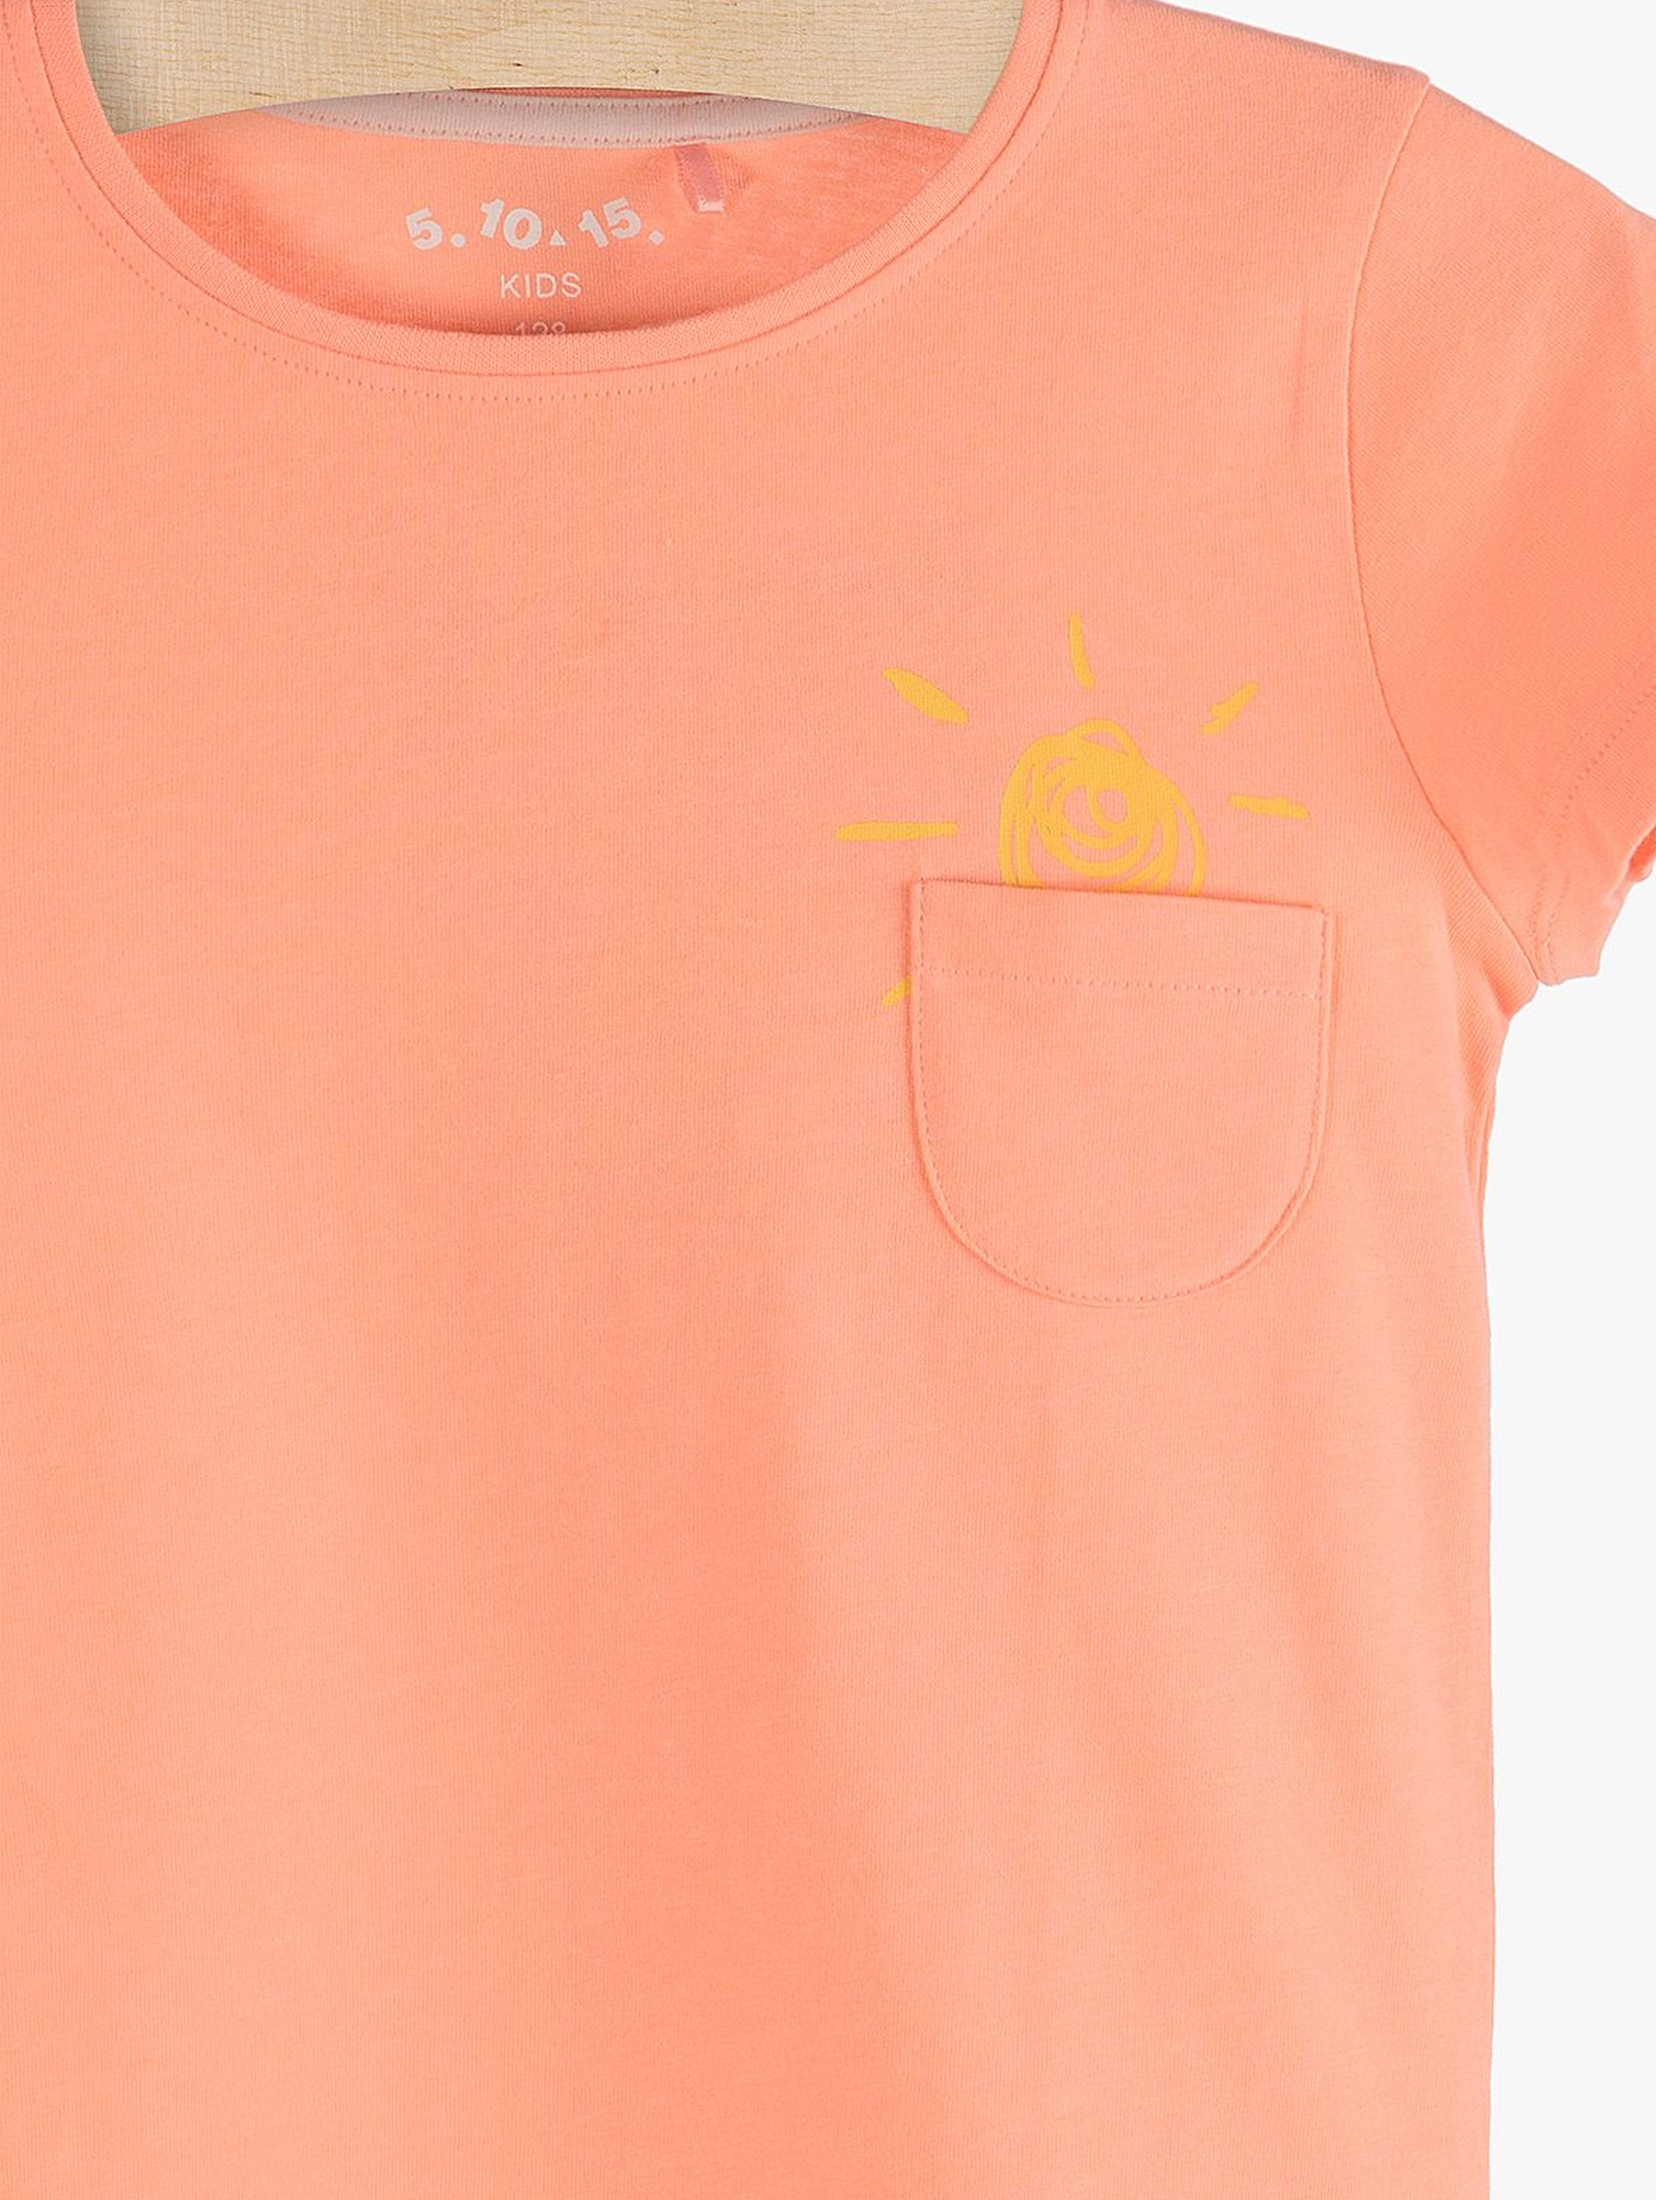 T-shirt dziewczęcy pomarańczowy z ozdobną kieszonką